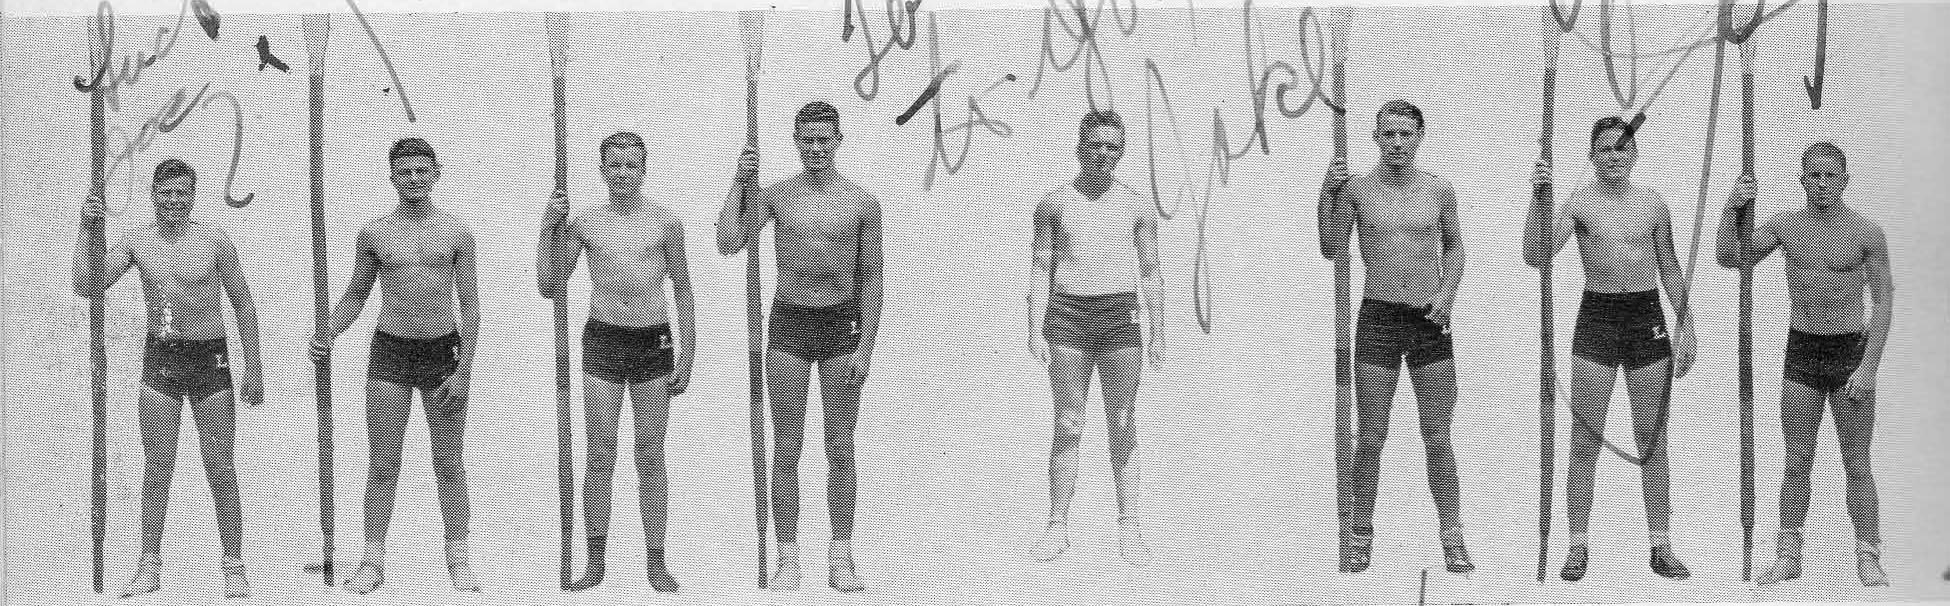 Jack Brigham and 1933 Crew Team